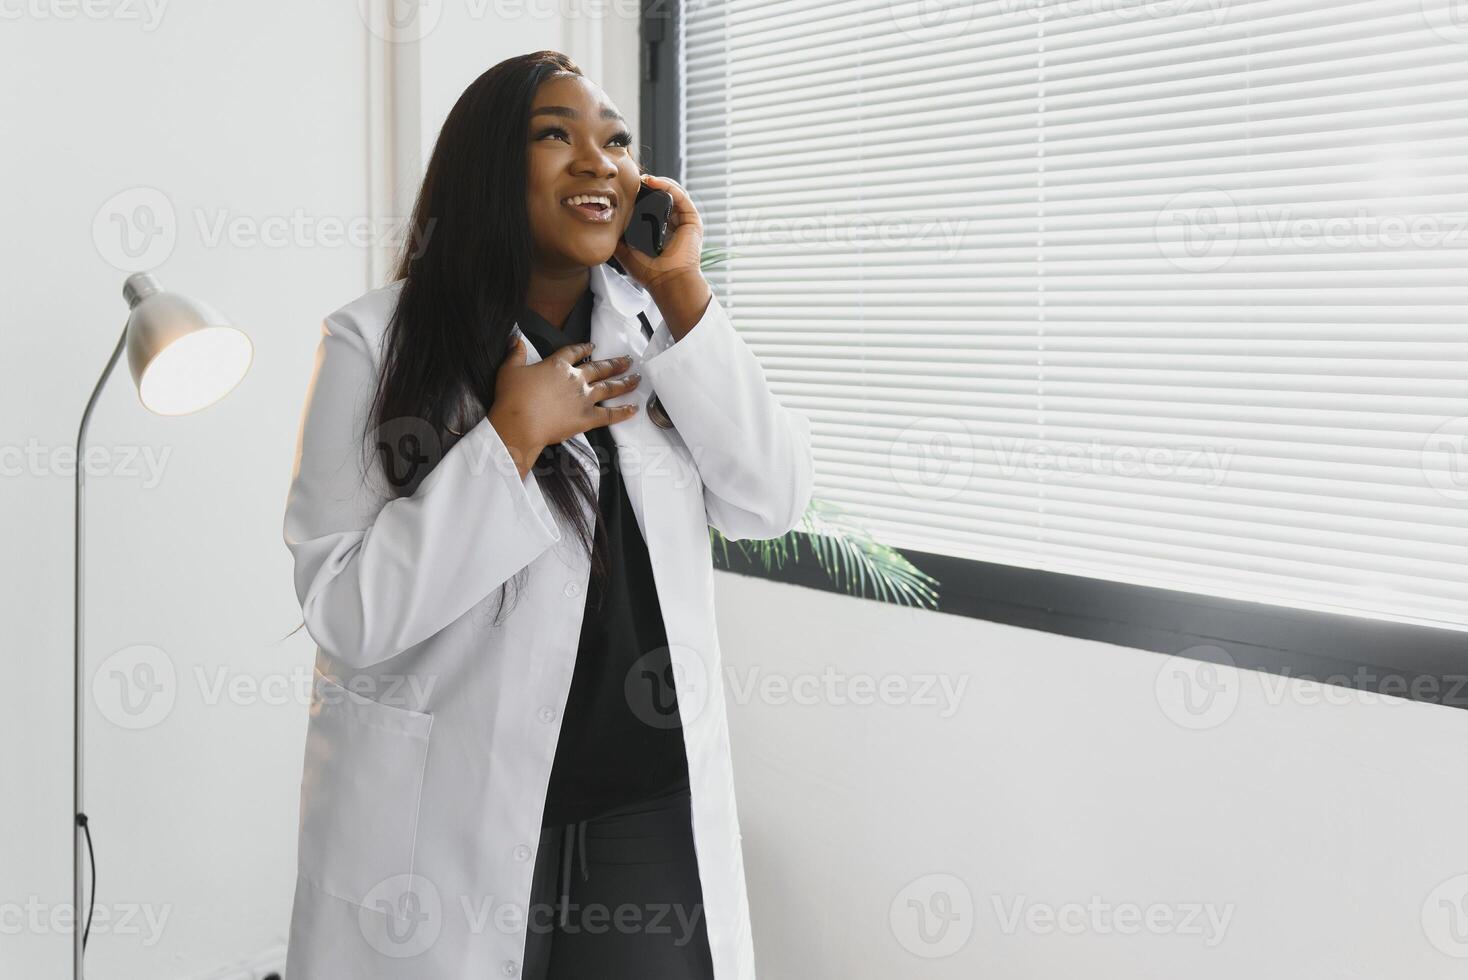 Medizin, Menschen und Gesundheitswesen Konzept - - afrikanisch amerikanisch weiblich Arzt oder Krankenschwester beim Krankenhaus. foto